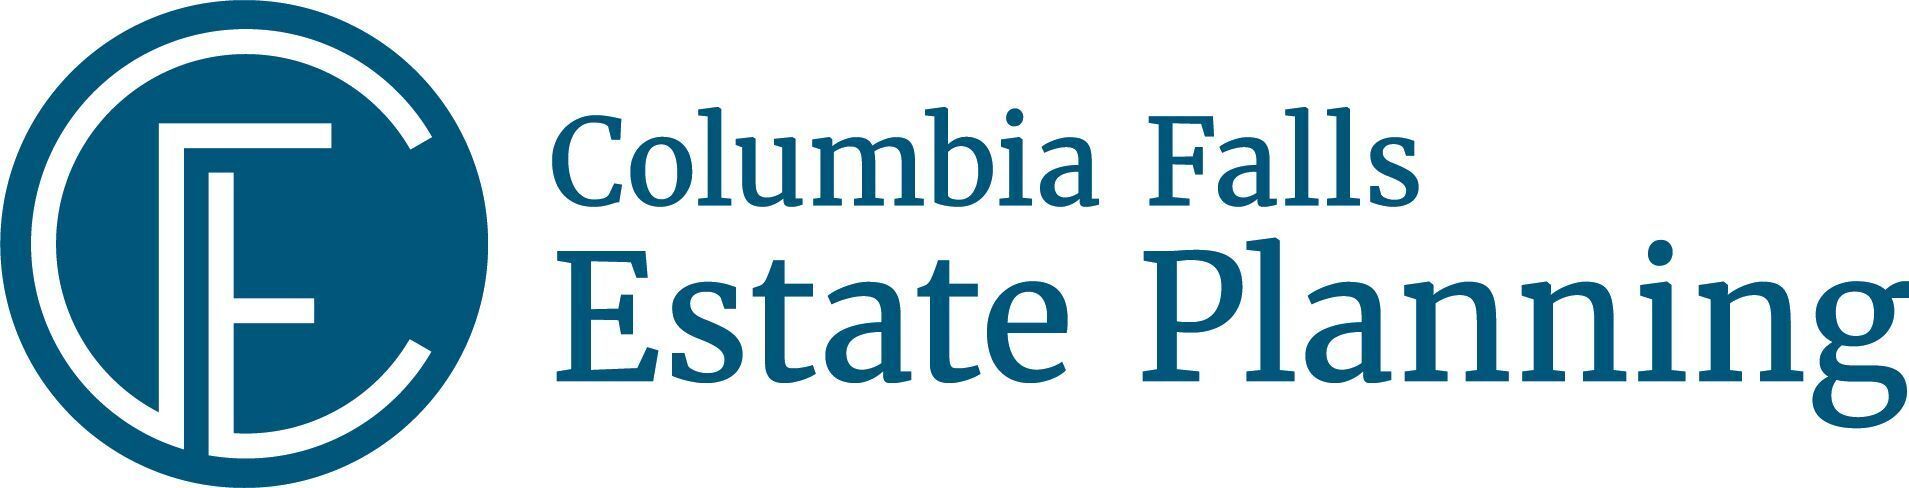 Columbia Falls Estate Planning